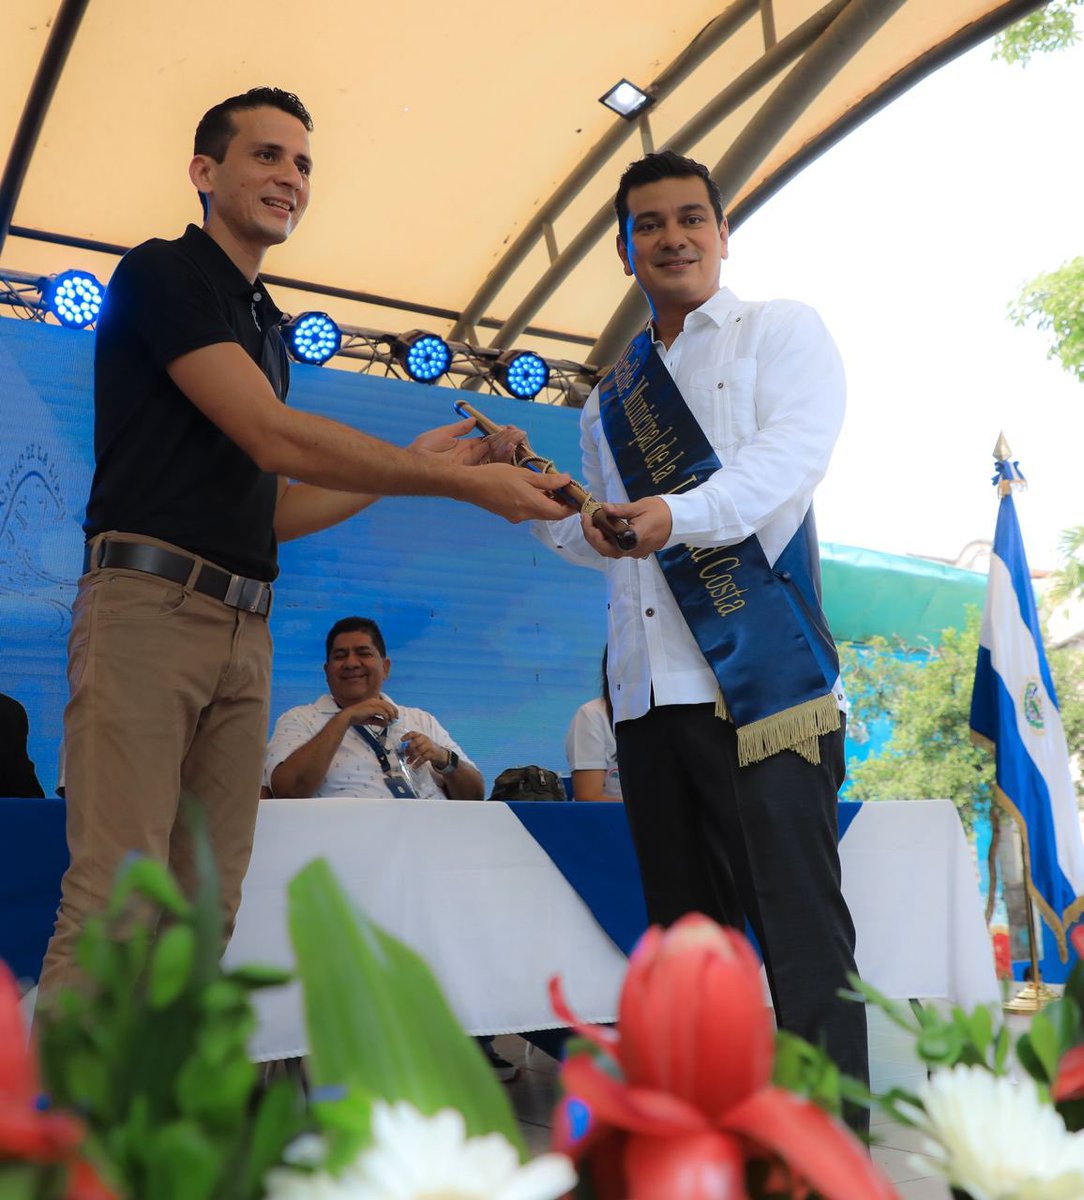 #TomaDePosesión | Rafael Ávalos (@RafaelA23777748) recibió la vara edilicia como nuevo alcalde de La Libertad Costa. El acto se lleva a cabo en el parque central del distrito de La Libertad.